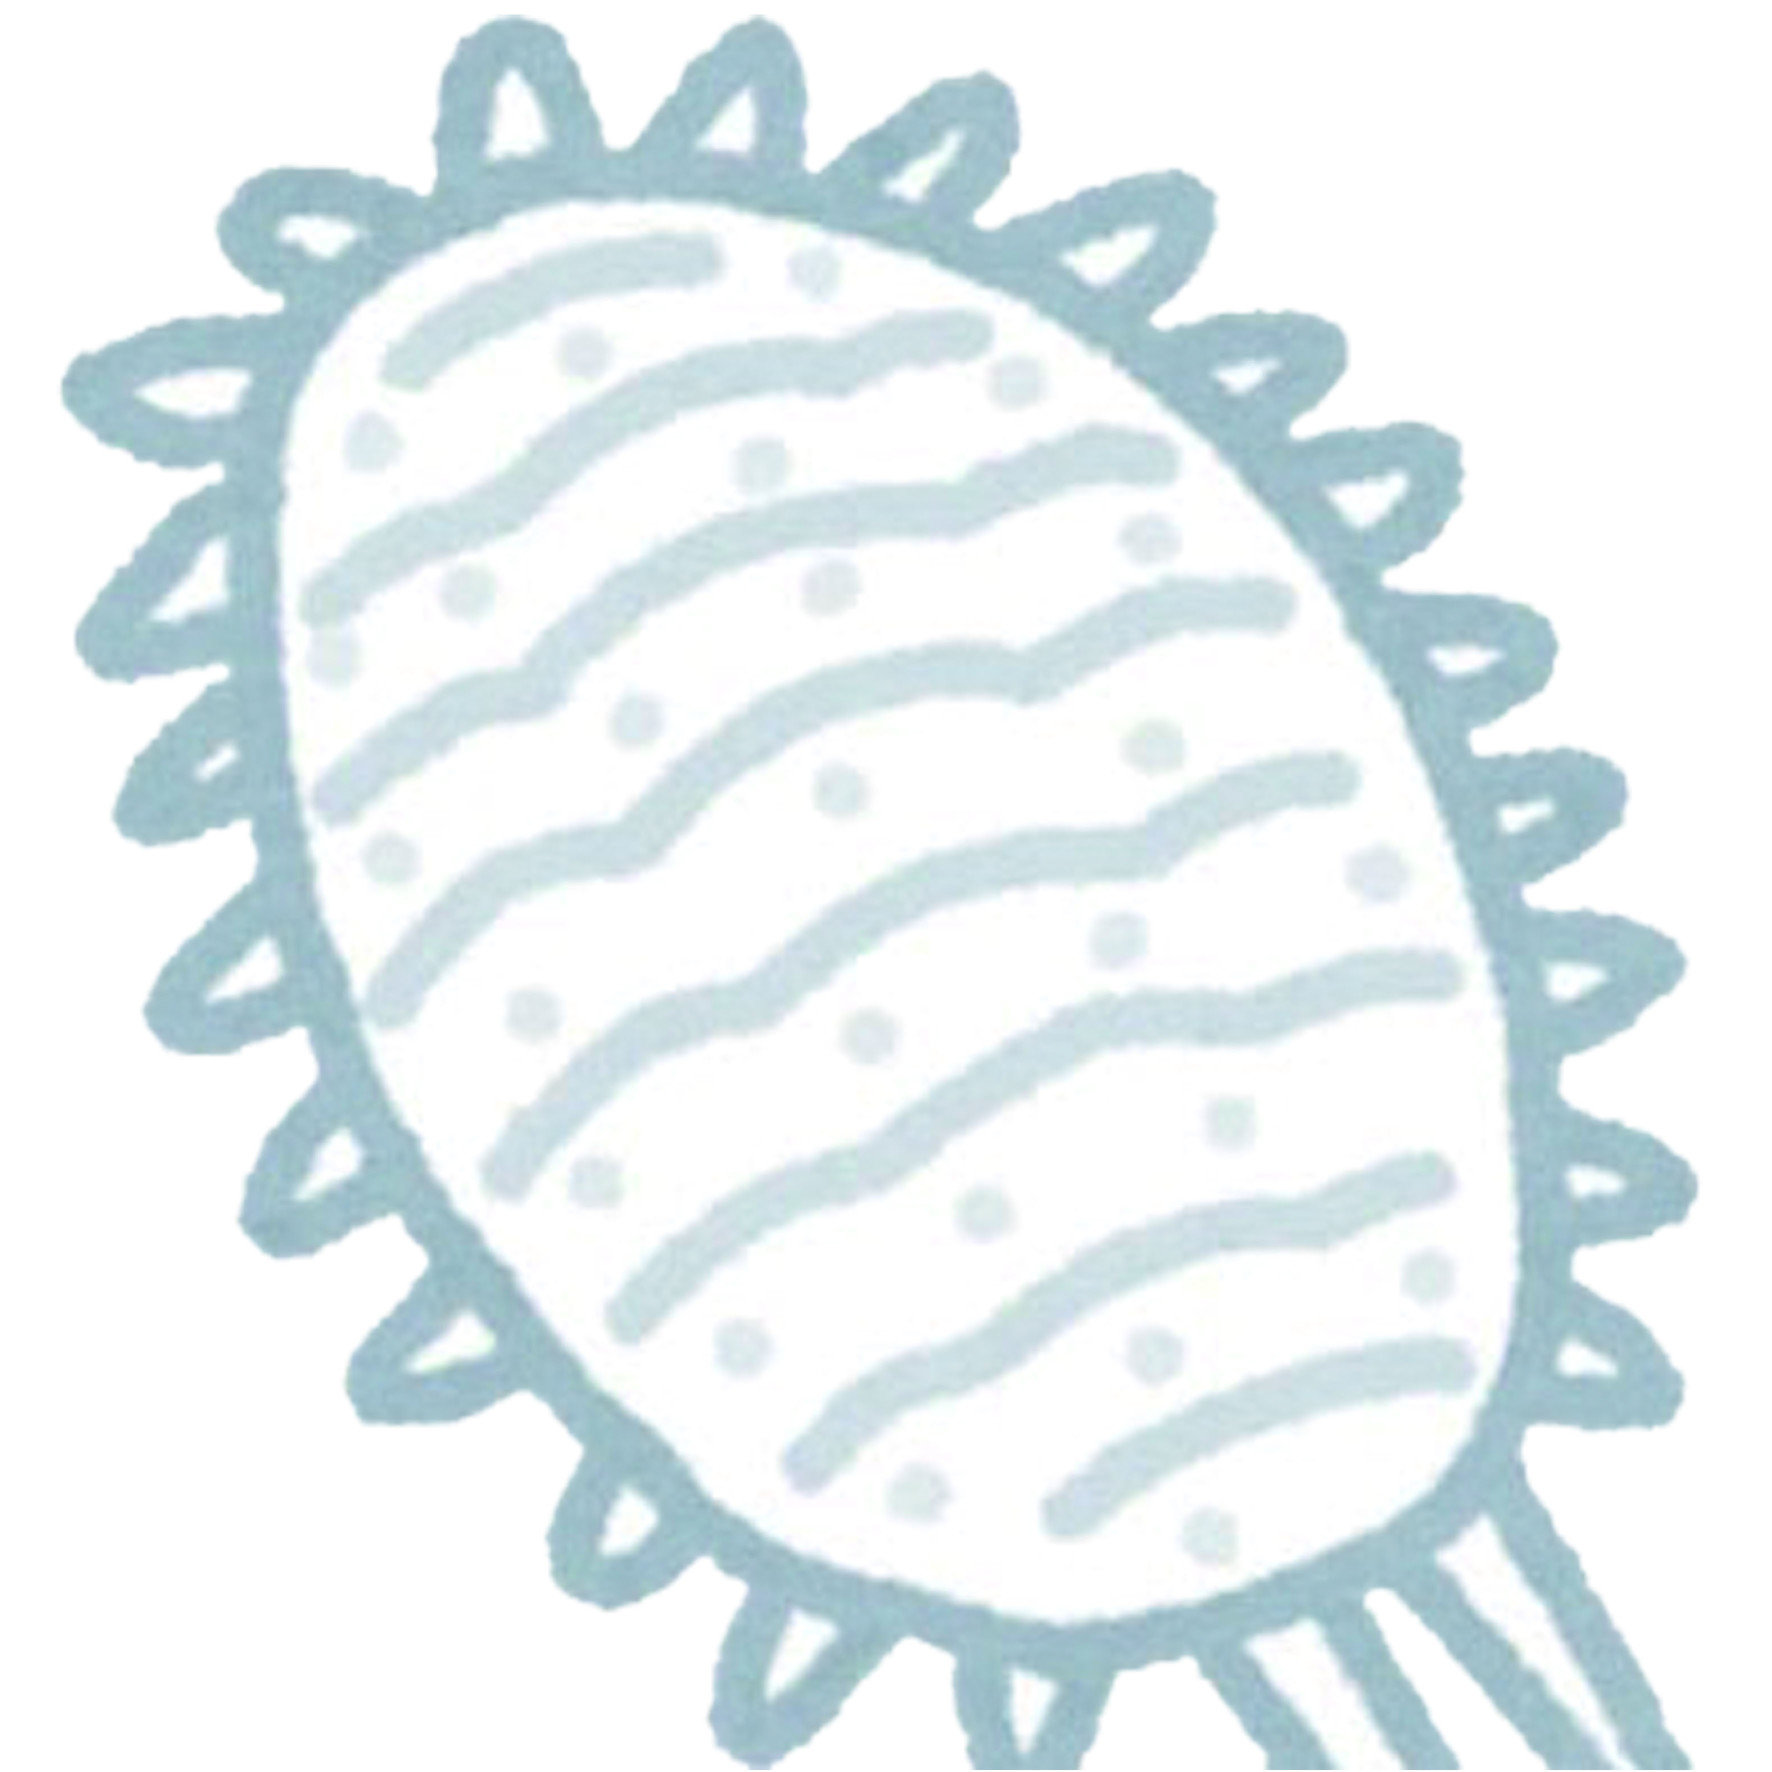 介殼蟲實在難以斬除，每當出現介殼蟲的蹤影，是所有果農與園藝工作中最大的夢靨。其中最大的原因在於，絕大多數品種的介殼蟲因為具有一層保護，例如粉介殼蟲會分泌粉狀的蠟質分泌物、盾介殼蟲具有厚重的一層硬殼。